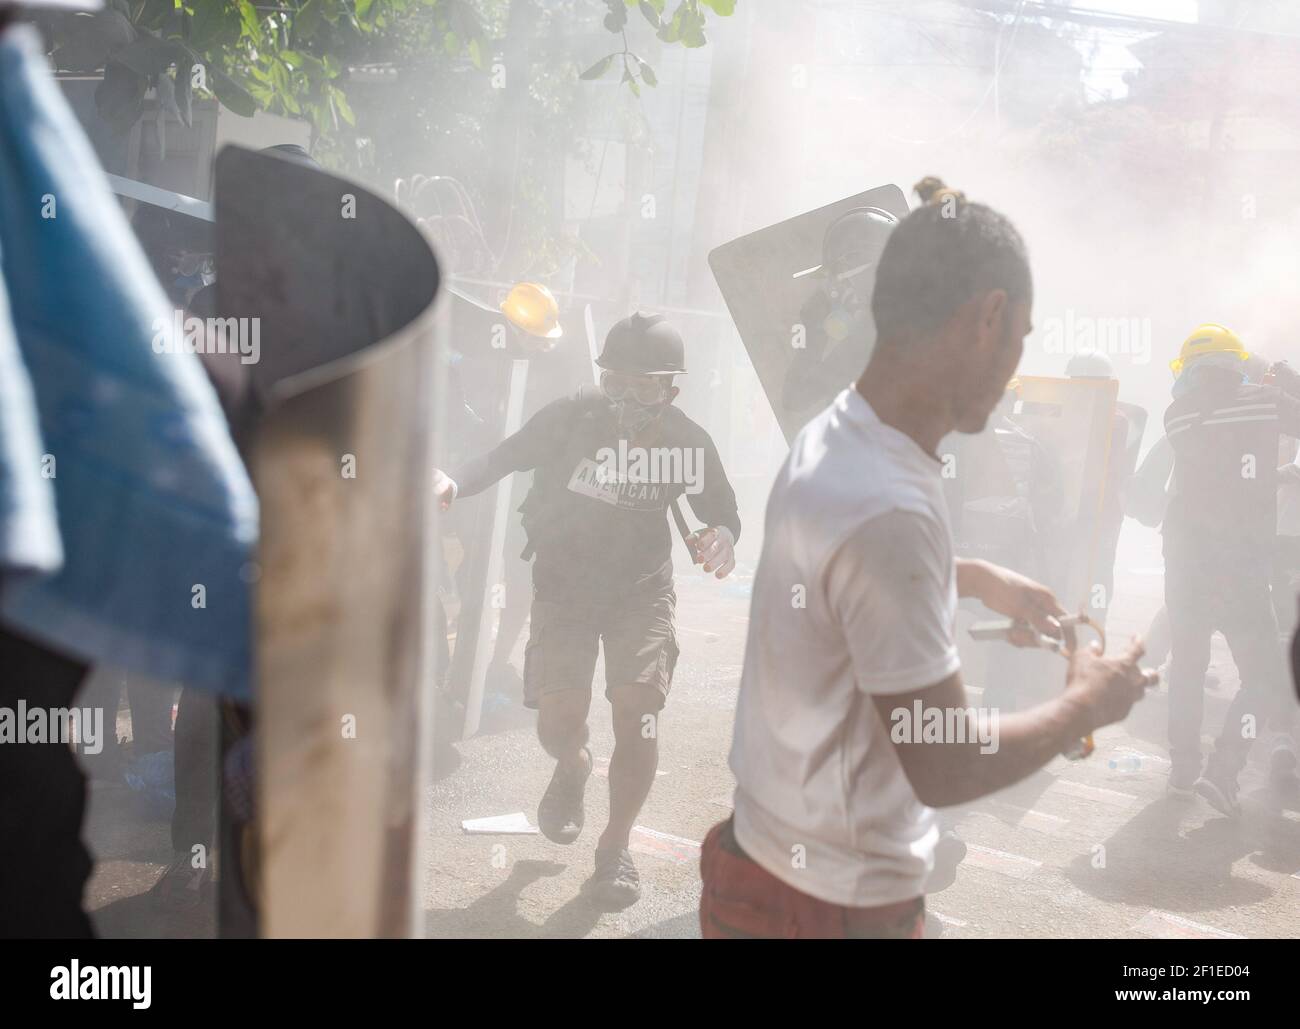 Los manifestantes reaccionaron después de que la policía antidisturbios disparara cartuchos de gas lacrimógeno durante una manifestación contra el golpe militar.la policía de Myanmar atacó a los manifestantes con balas de goma, municiones vivas, gas lacrimógeno y bombas de aturdimiento en respuesta a los manifestantes contra el golpe militar el lunes. Las fuerzas de seguridad mataron a dos manifestantes en Myitkyina, estado de Kachin, procedentes de fuentes locales. Un total de 1758 personas han sido perseguidas, 1440 de ellas todavía en prisiones militares de Myanmar y 60 personas han sido asesinadas desde el comienzo de las protestas contra el golpe militar. Los militares de Myanmar detuvieron a la Consejera de Estado de Myanmar Aung Foto de stock